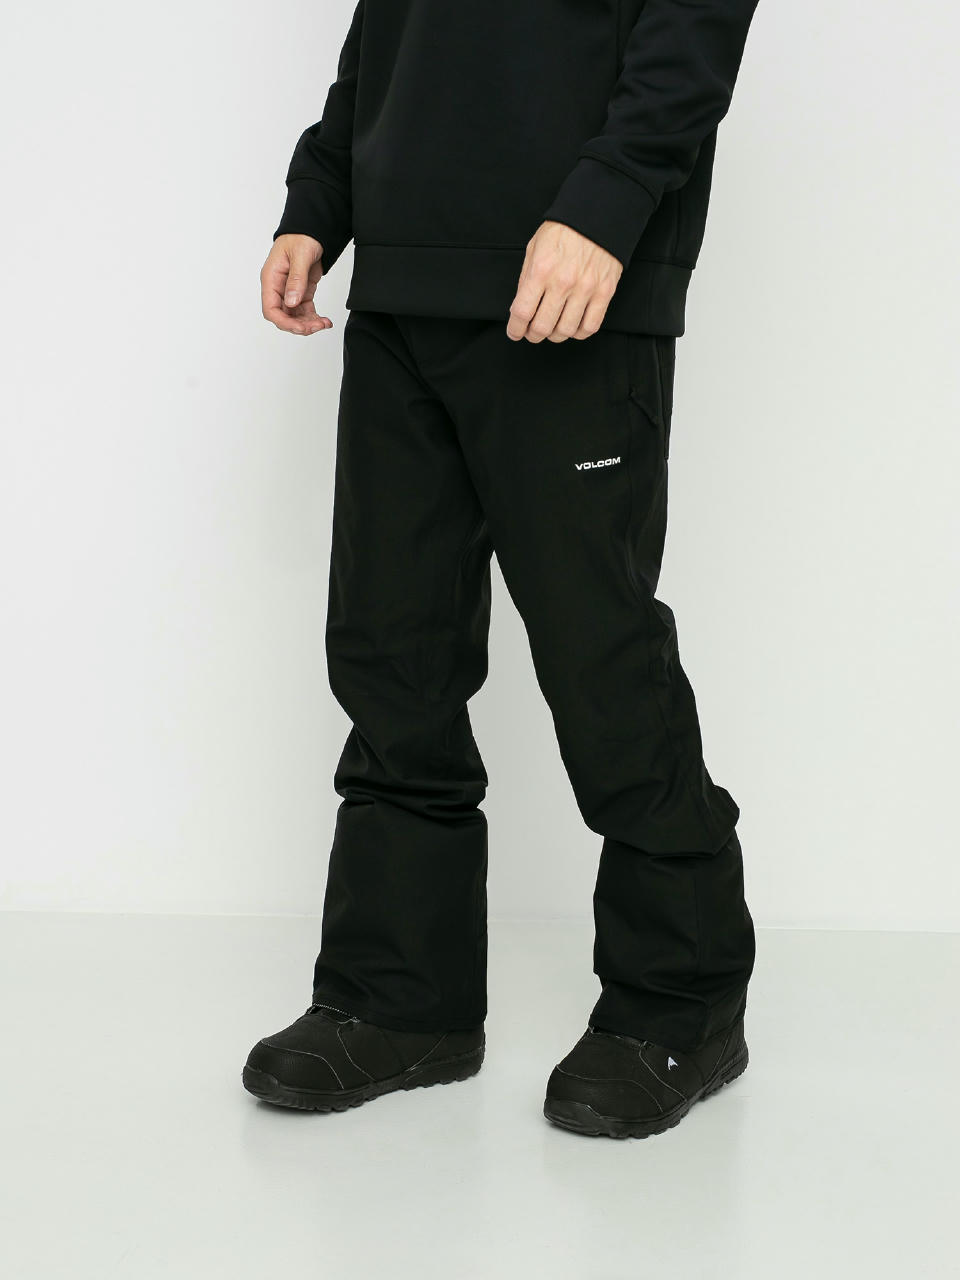 Volcom Klocker Tight Pant Black Ski Pants